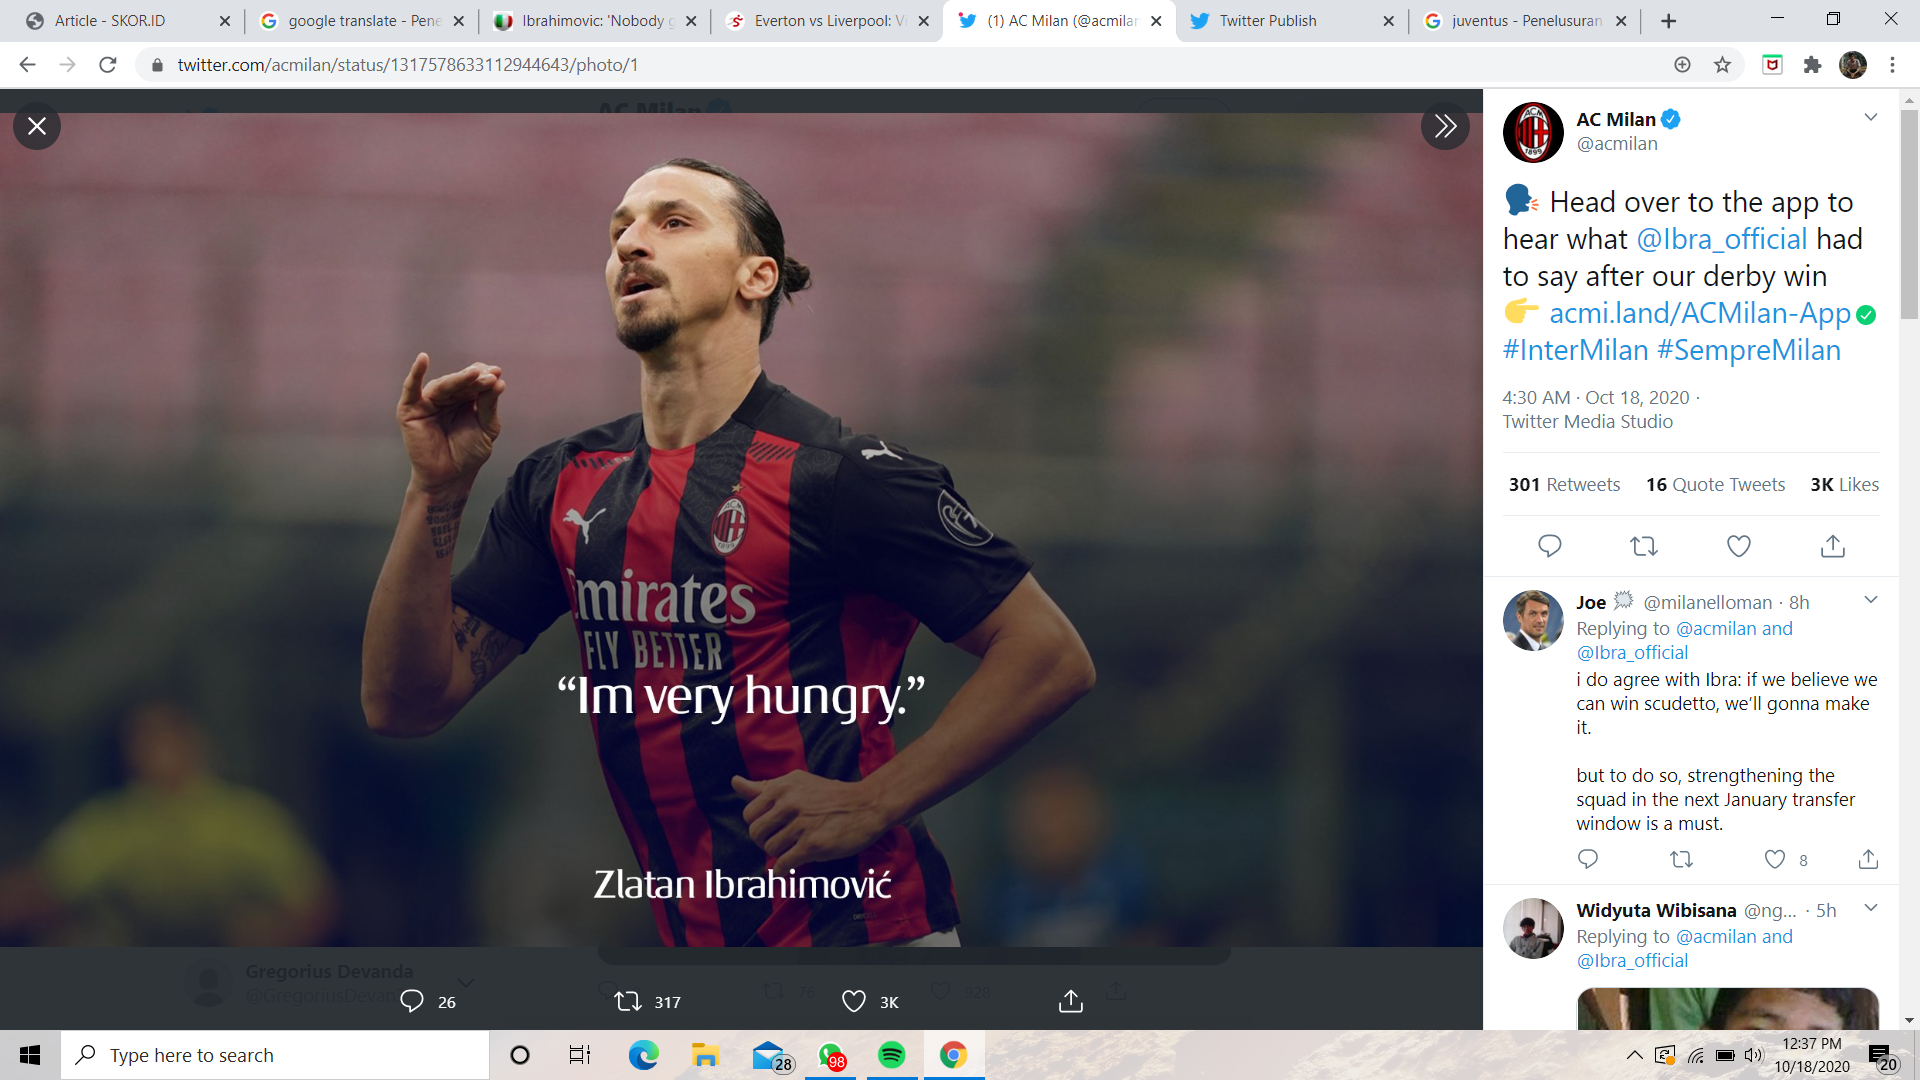 Zlatan Ibrahimovic: Saya Telah Memberikan Karisma dan Akan Membawa Perubahan di AC Milan